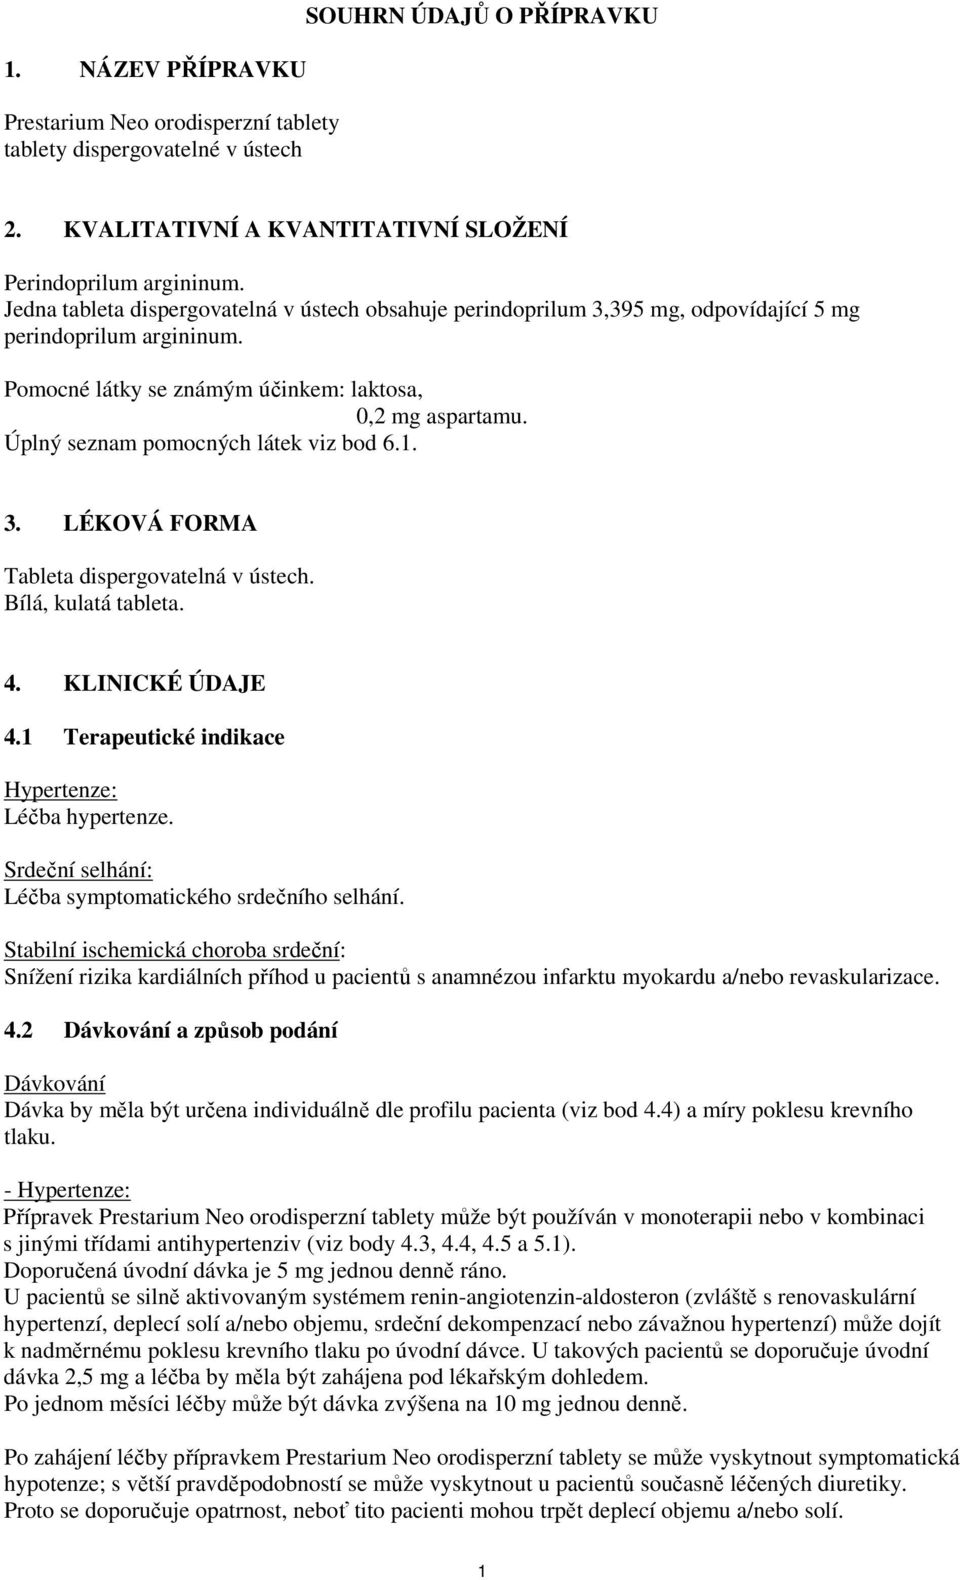 Úplný seznam pomocných látek viz bod 6.1. 3. LÉKOVÁ FORMA Tableta dispergovatelná v ústech. Bílá, kulatá tableta. 4. KLINICKÉ ÚDAJE 4.1 Terapeutické indikace Hypertenze: Léčba hypertenze.